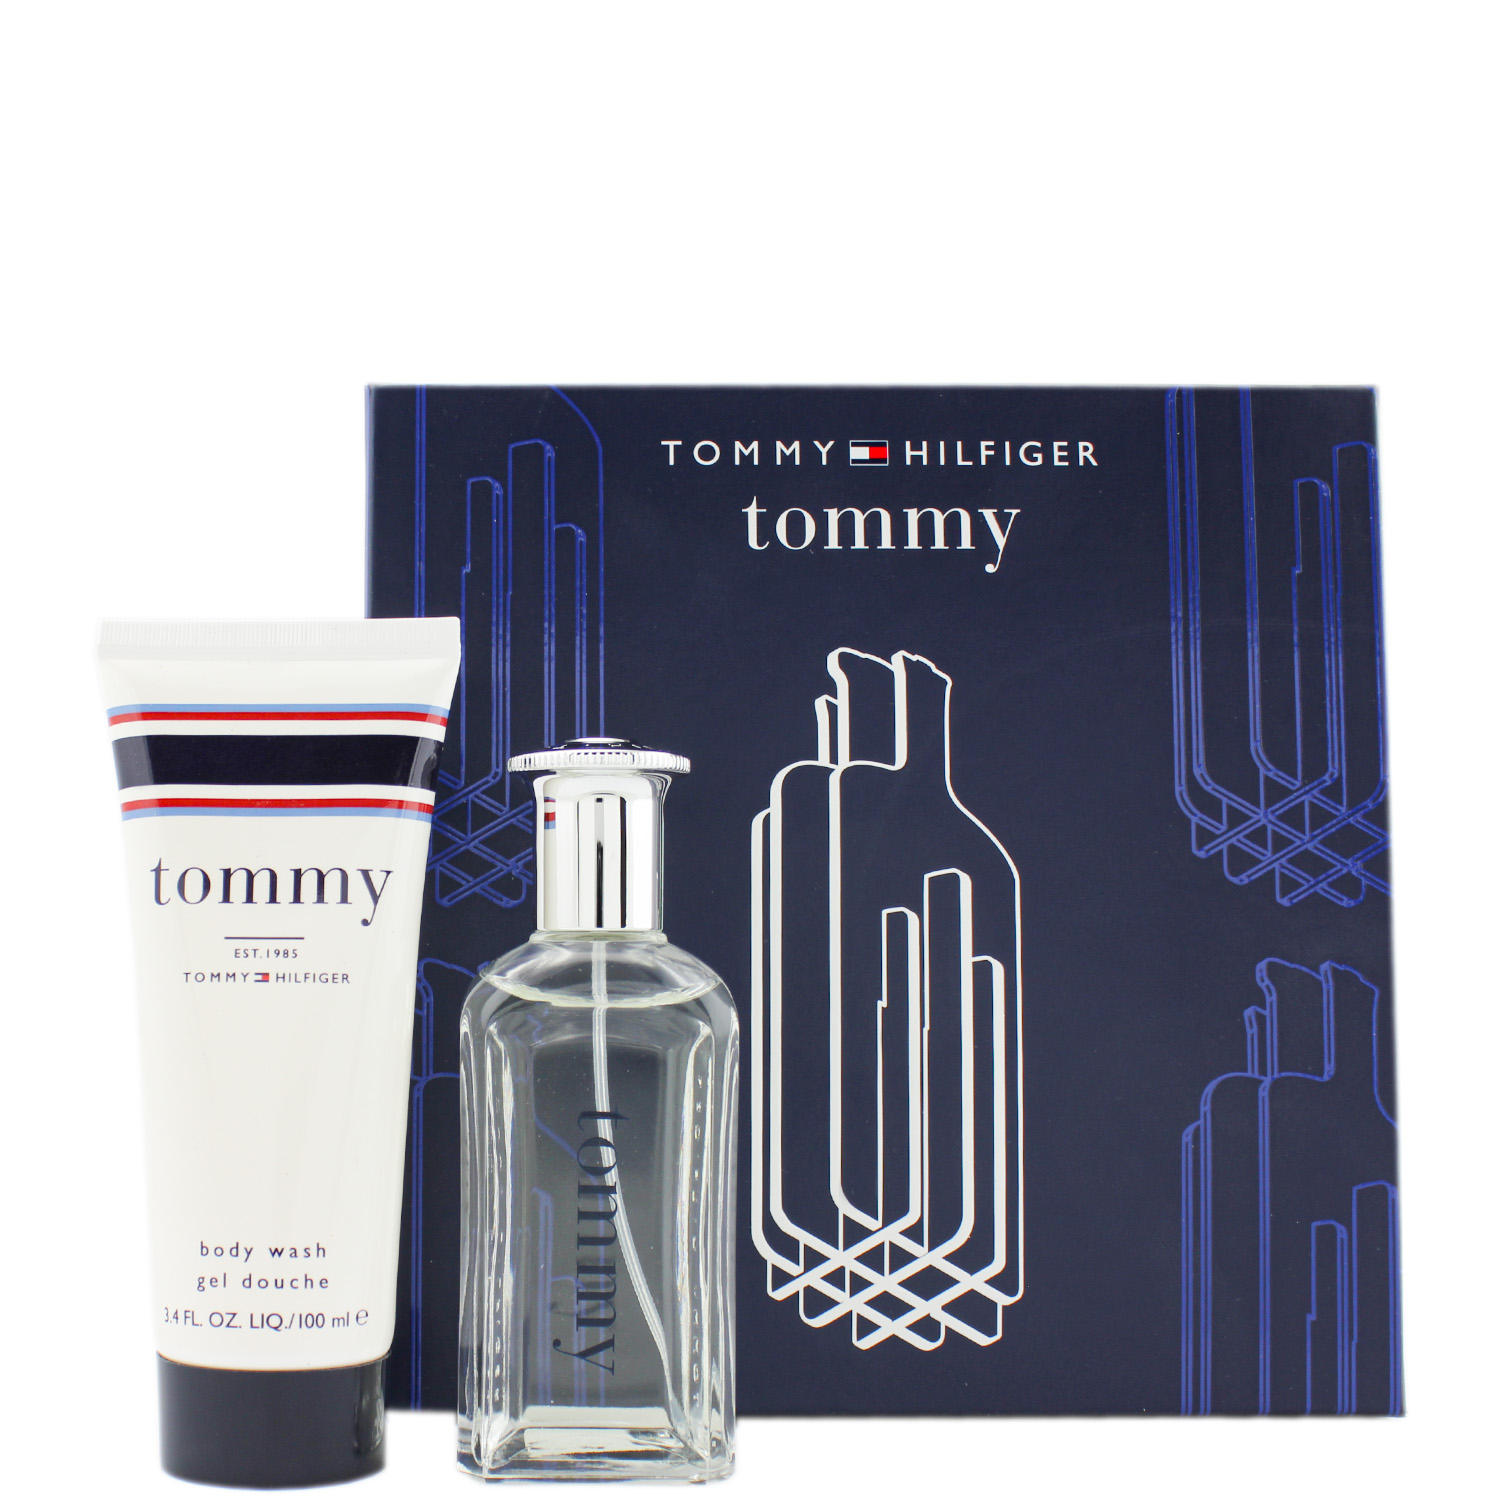 Tommy Hilfiger Tommy Set Eau de Toilette 50ml & Shower Gel 100ml